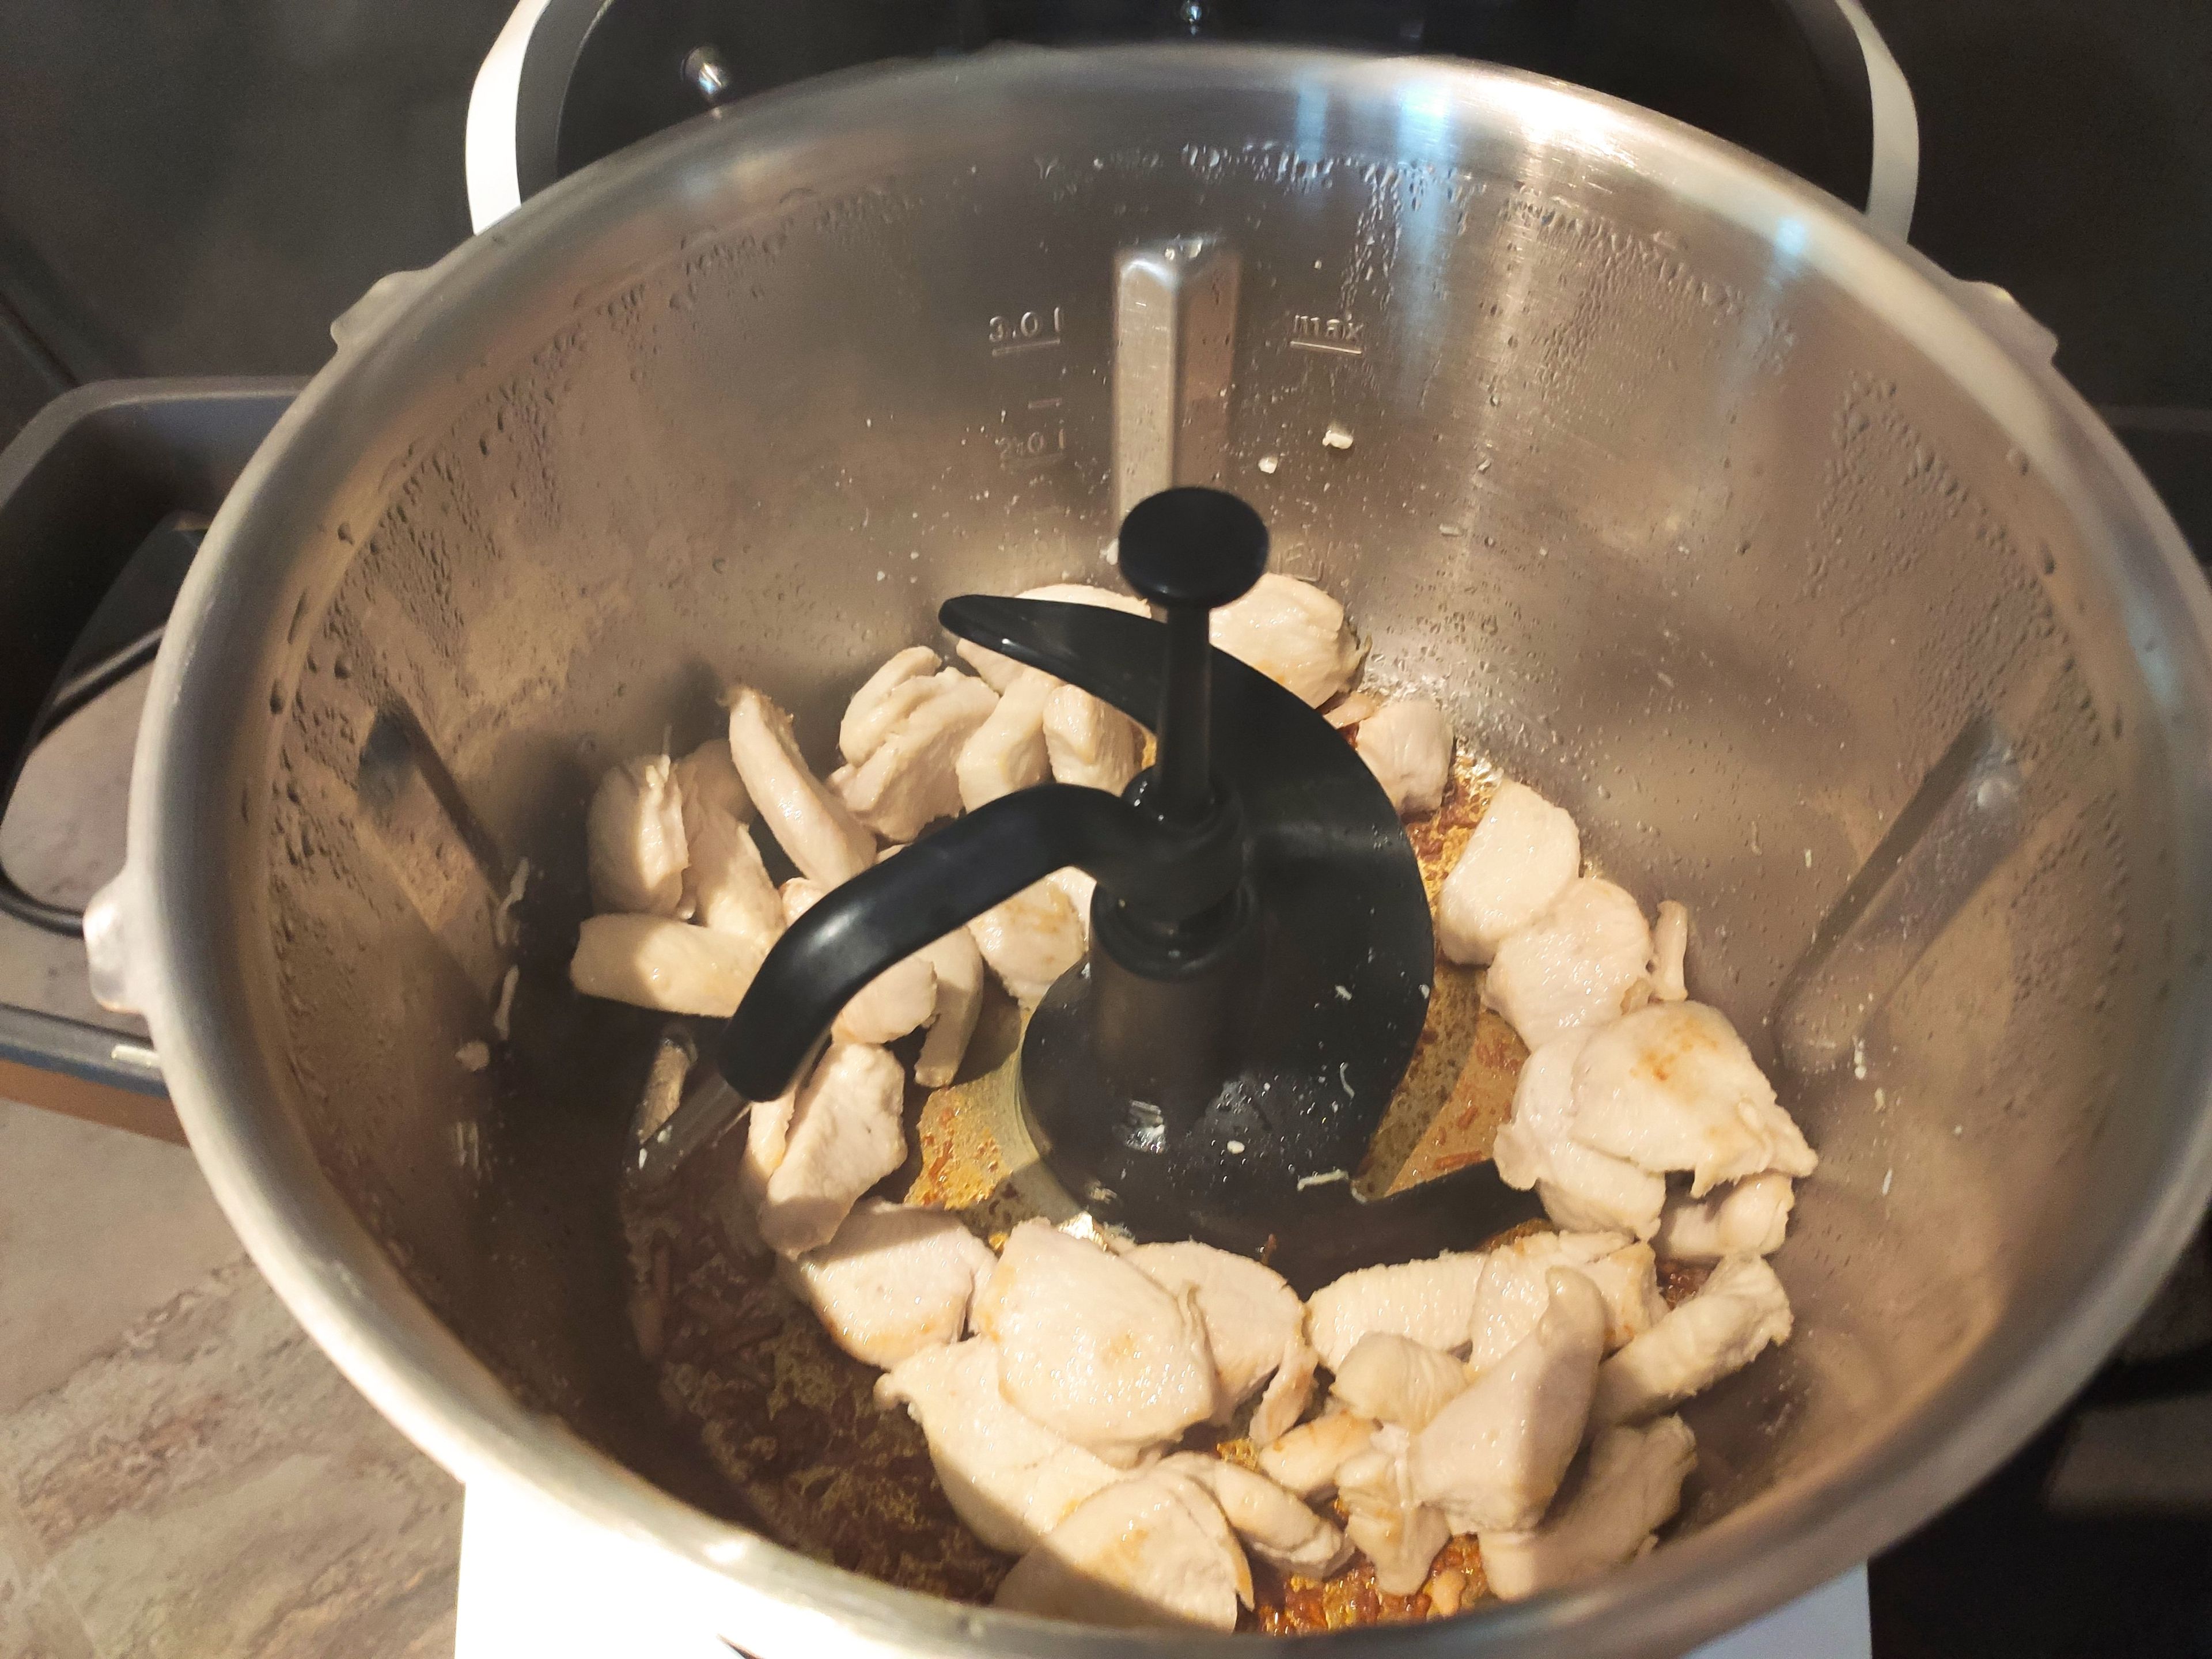 Hähnchenbrustfilet waschen, trocknen und in ca. 2 cm große Stücke schneiden. Den Cookit 3D-Rührer in den Topf einsetzen und mit 2 EL Öl ohne Messbecher 4 Min. auf 200° erhitzen (3D-Rührer | Stufe 2 | 200°C | 4 Min.).  Nun das Fleisch in den Topf geben und  5 Min.  bei 200°C anbraten (3D-Rührer | Stufe 4 | 200°C | 5 Min.). Anschließend das Fleisch umfüllen und den Topf reinigen.